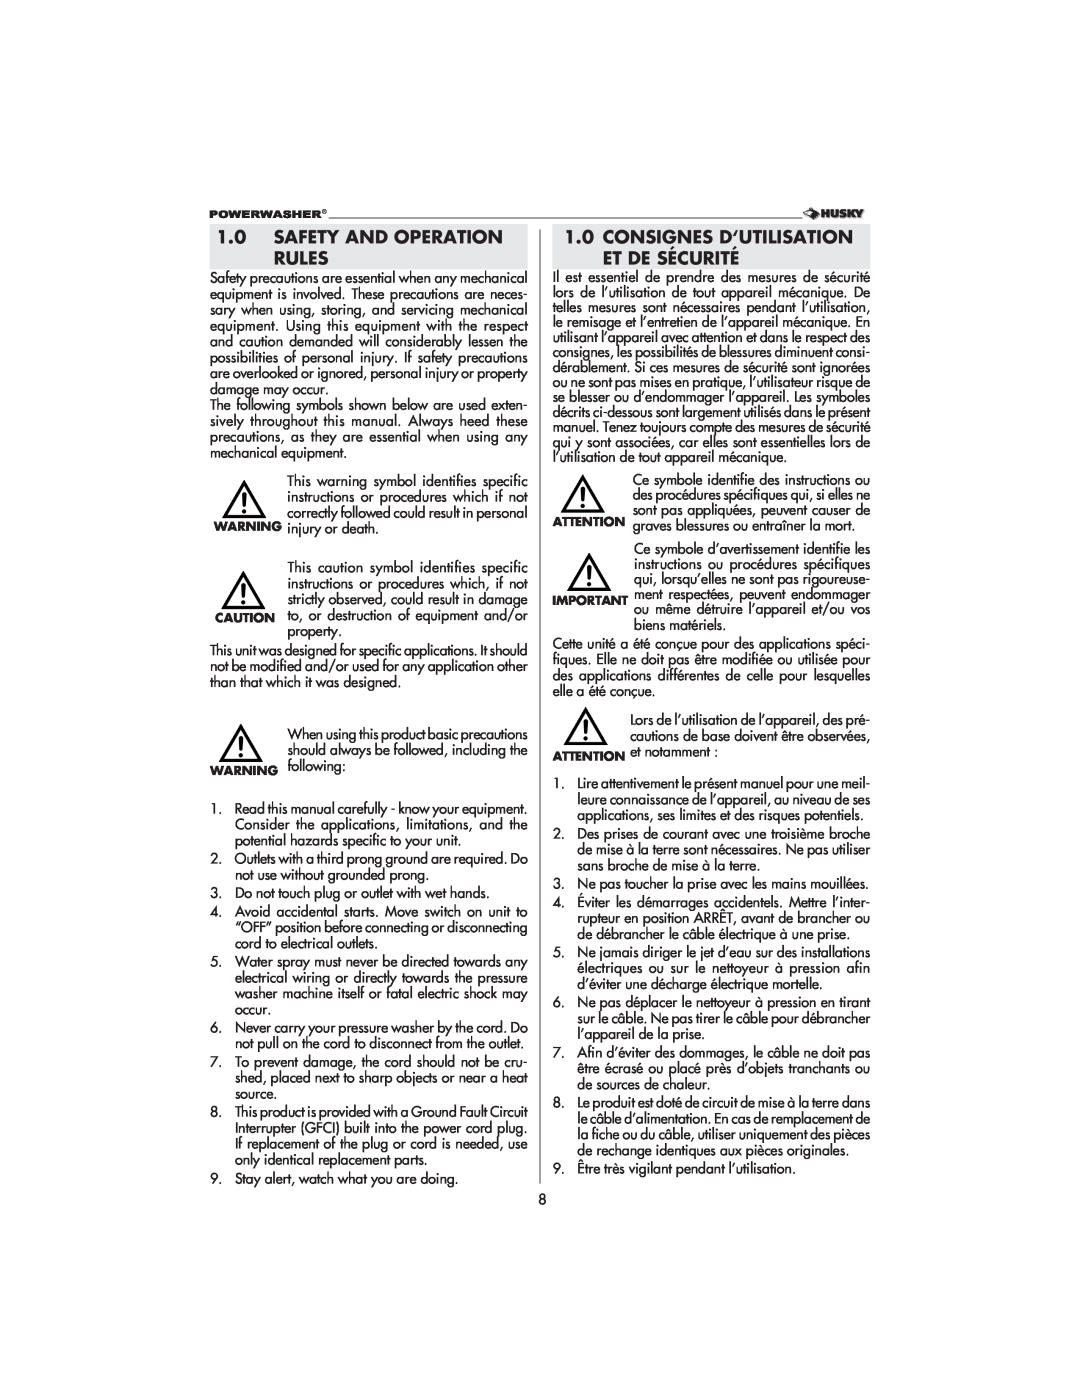 Husky 1800 CA manual Safety And Operation Rules, Consignes D‘Utilisation Et De Sécurité 